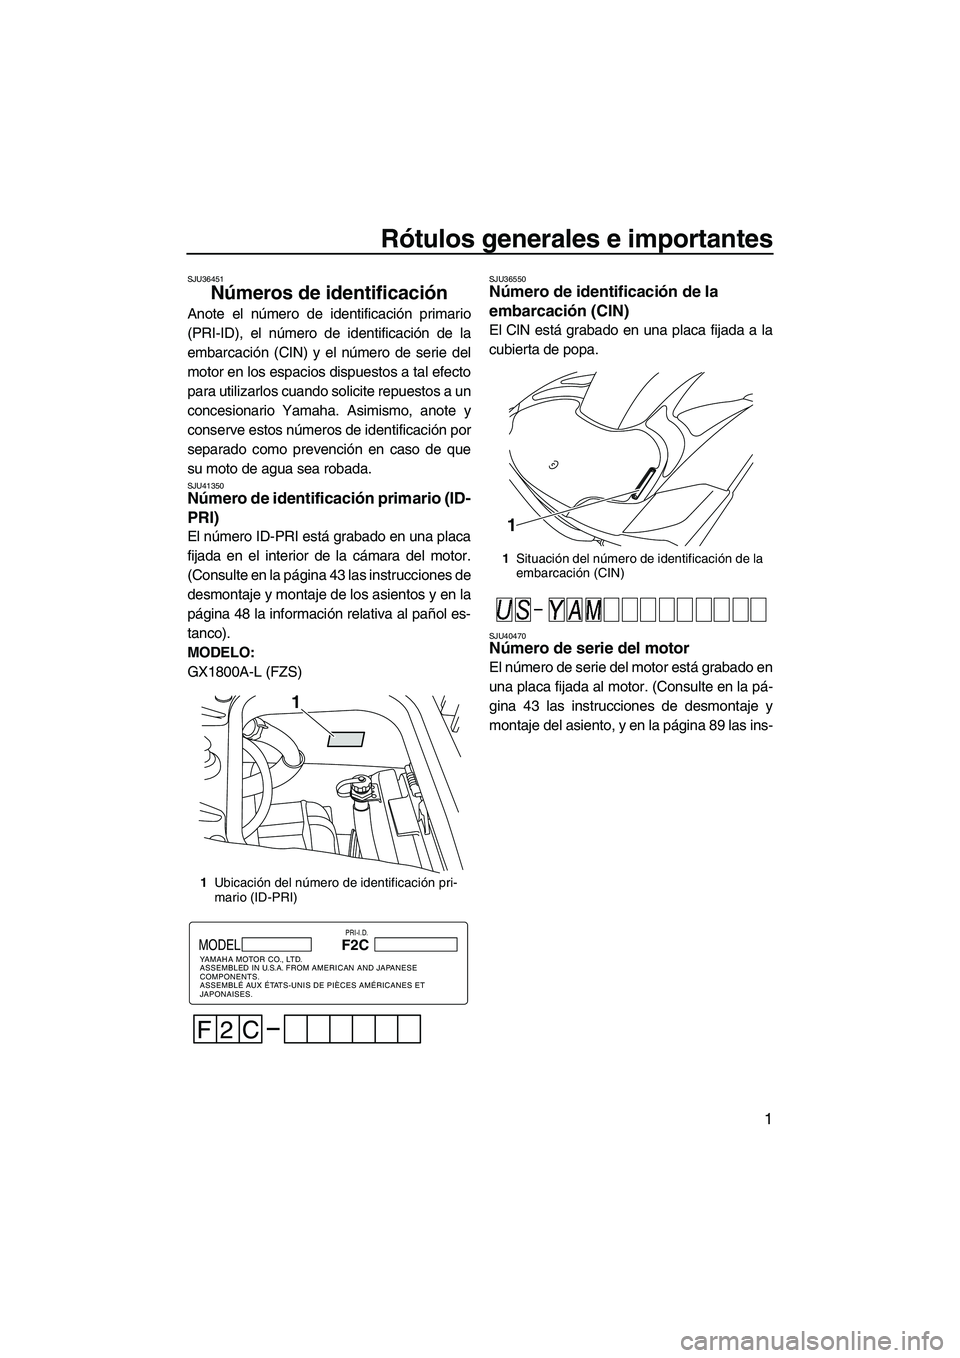 YAMAHA FZS 2012  Manuale de Empleo (in Spanish) Rótulos generales e importantes
1
SJU36451
Números de identificación 
Anote el número de identificación primario
(PRI-ID), el número de identificación de la
embarcación (CIN) y el número de s